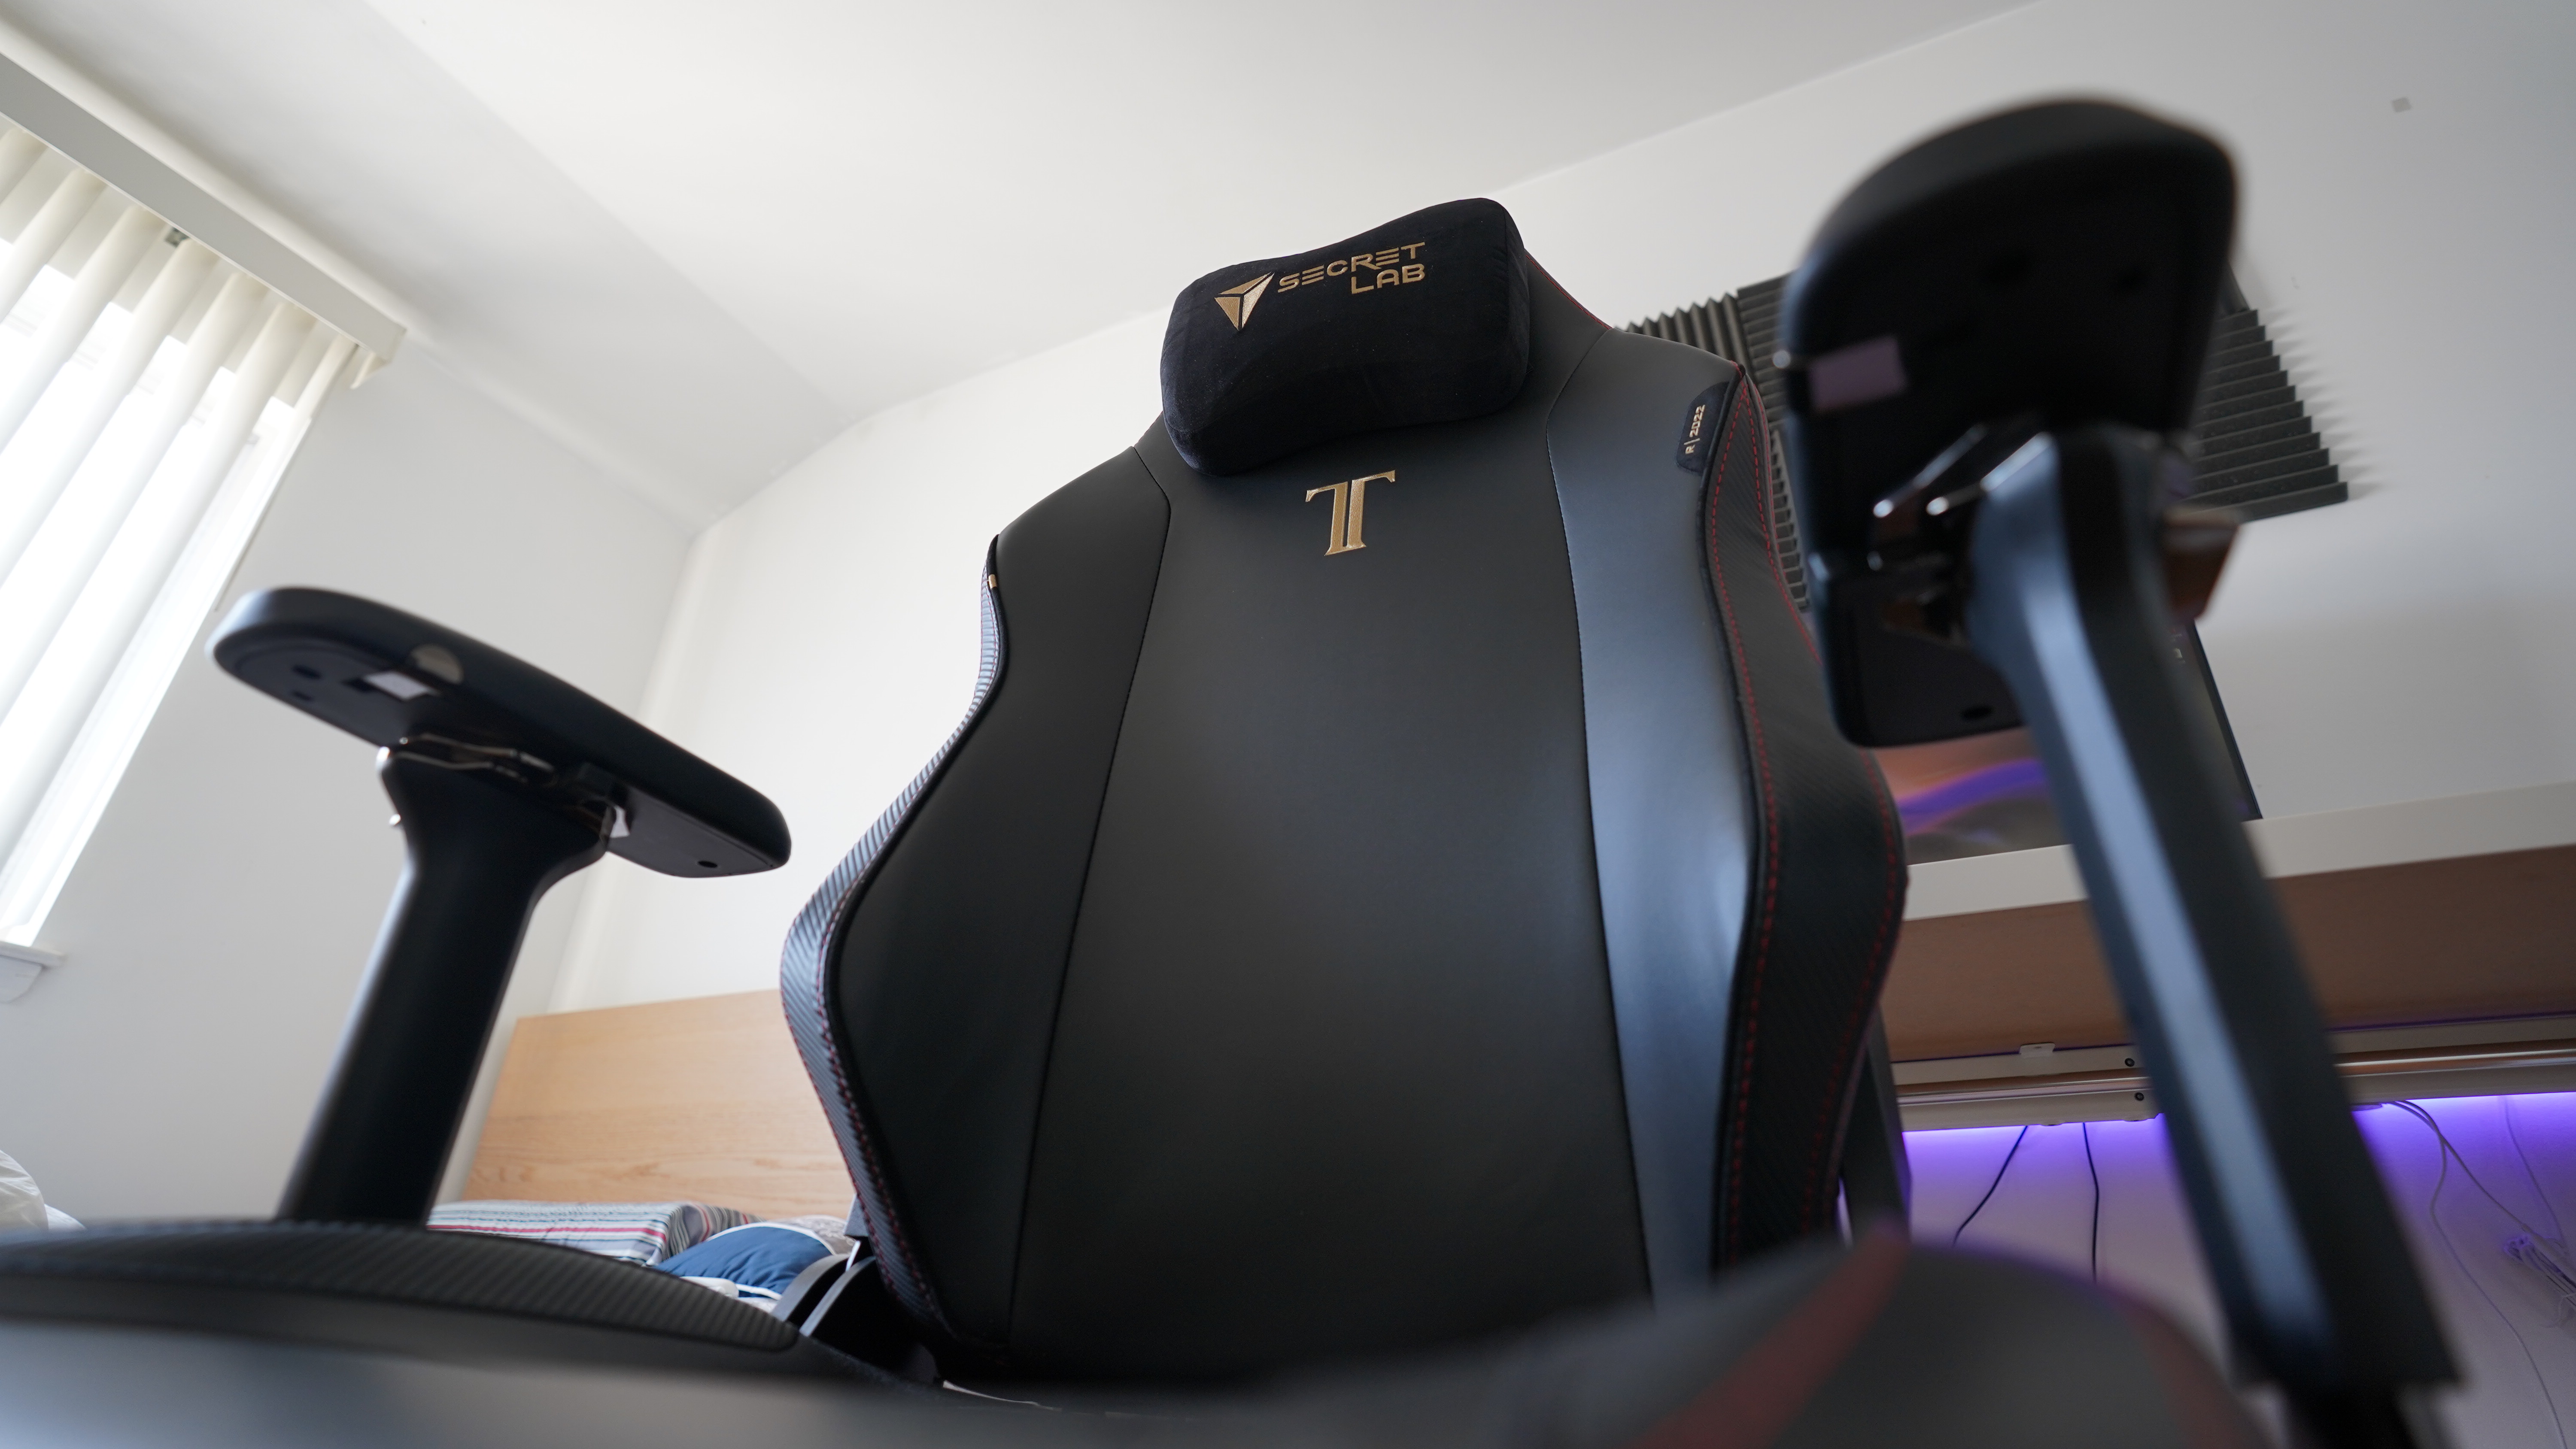 Secretlab Titan Evo 2022 Review: A Good Gaming Chair